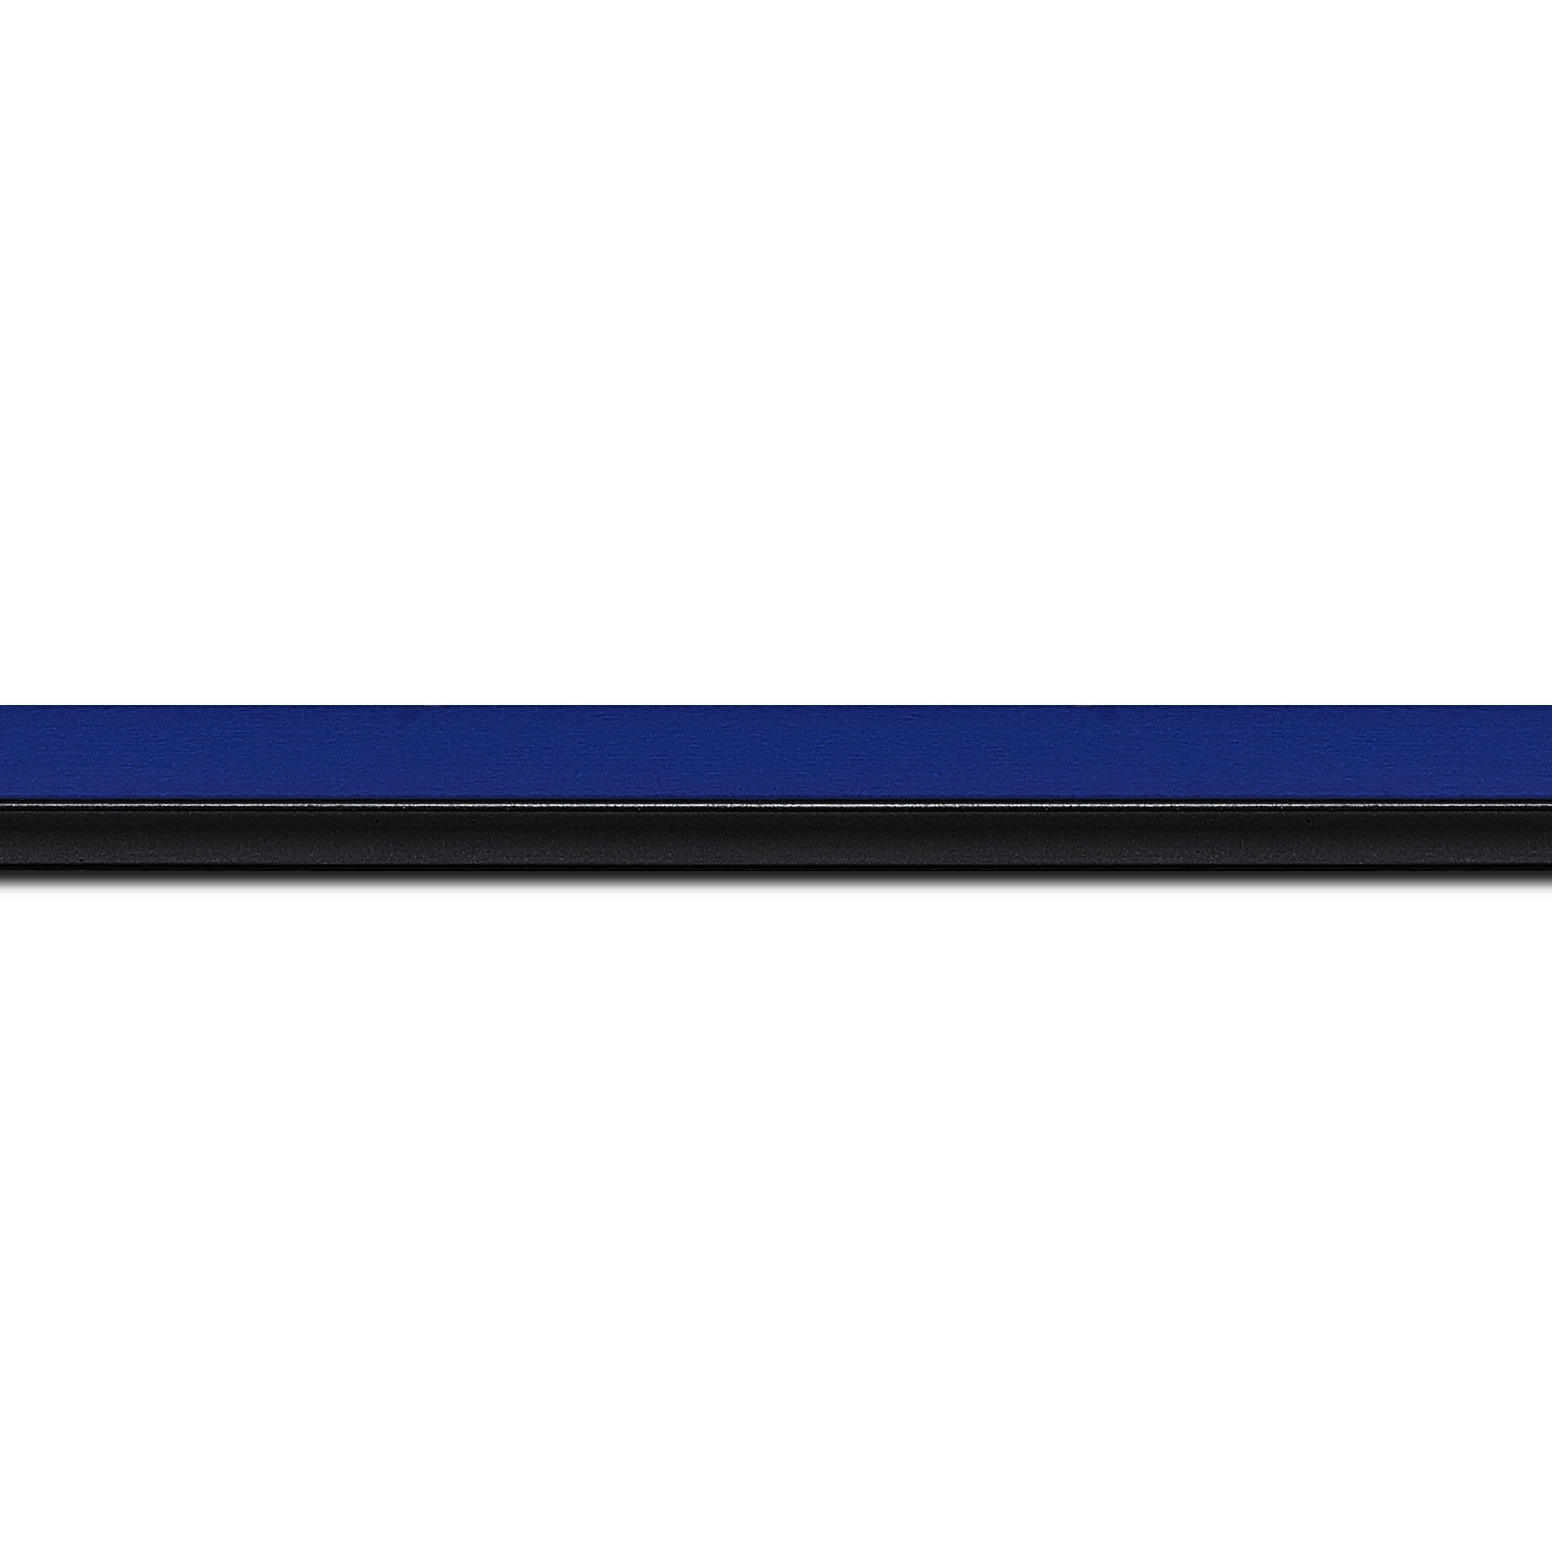 Baguette longueur 1.40m bois profil plat largeur 1.6cm couleur bleu franc filet noir en retrait de la face du cadre de 6mm assurant un effet très original